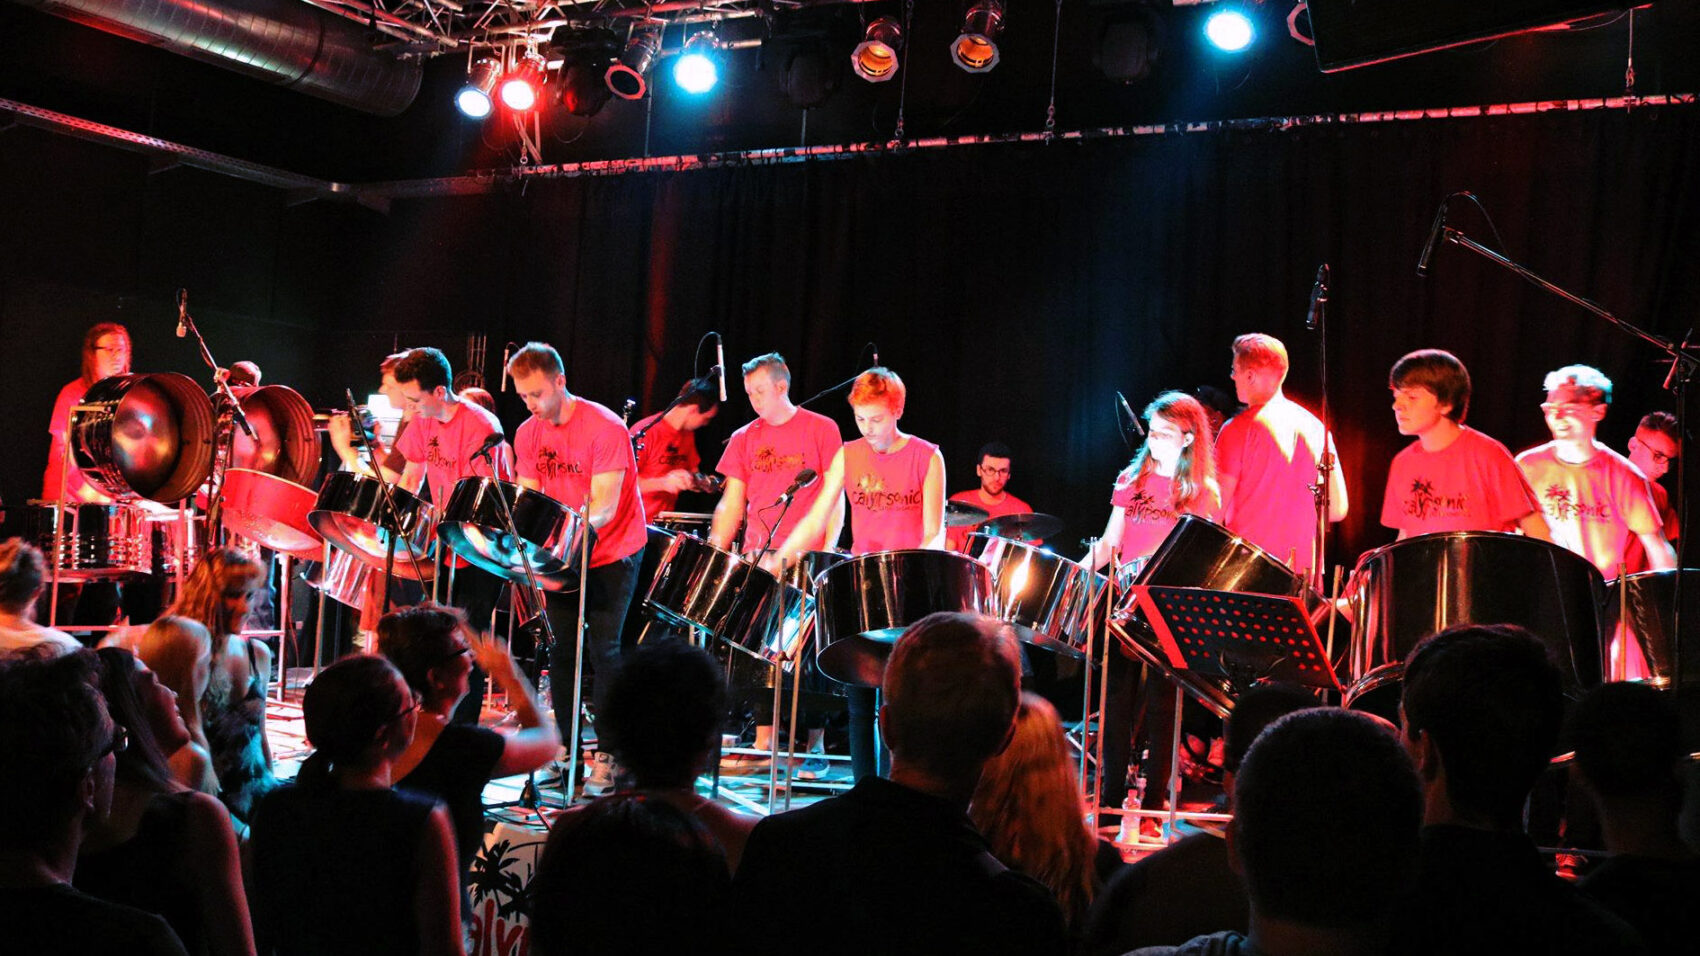 Junge Steelband-Musiker*innen in roten T-Shirts auf der Bühne